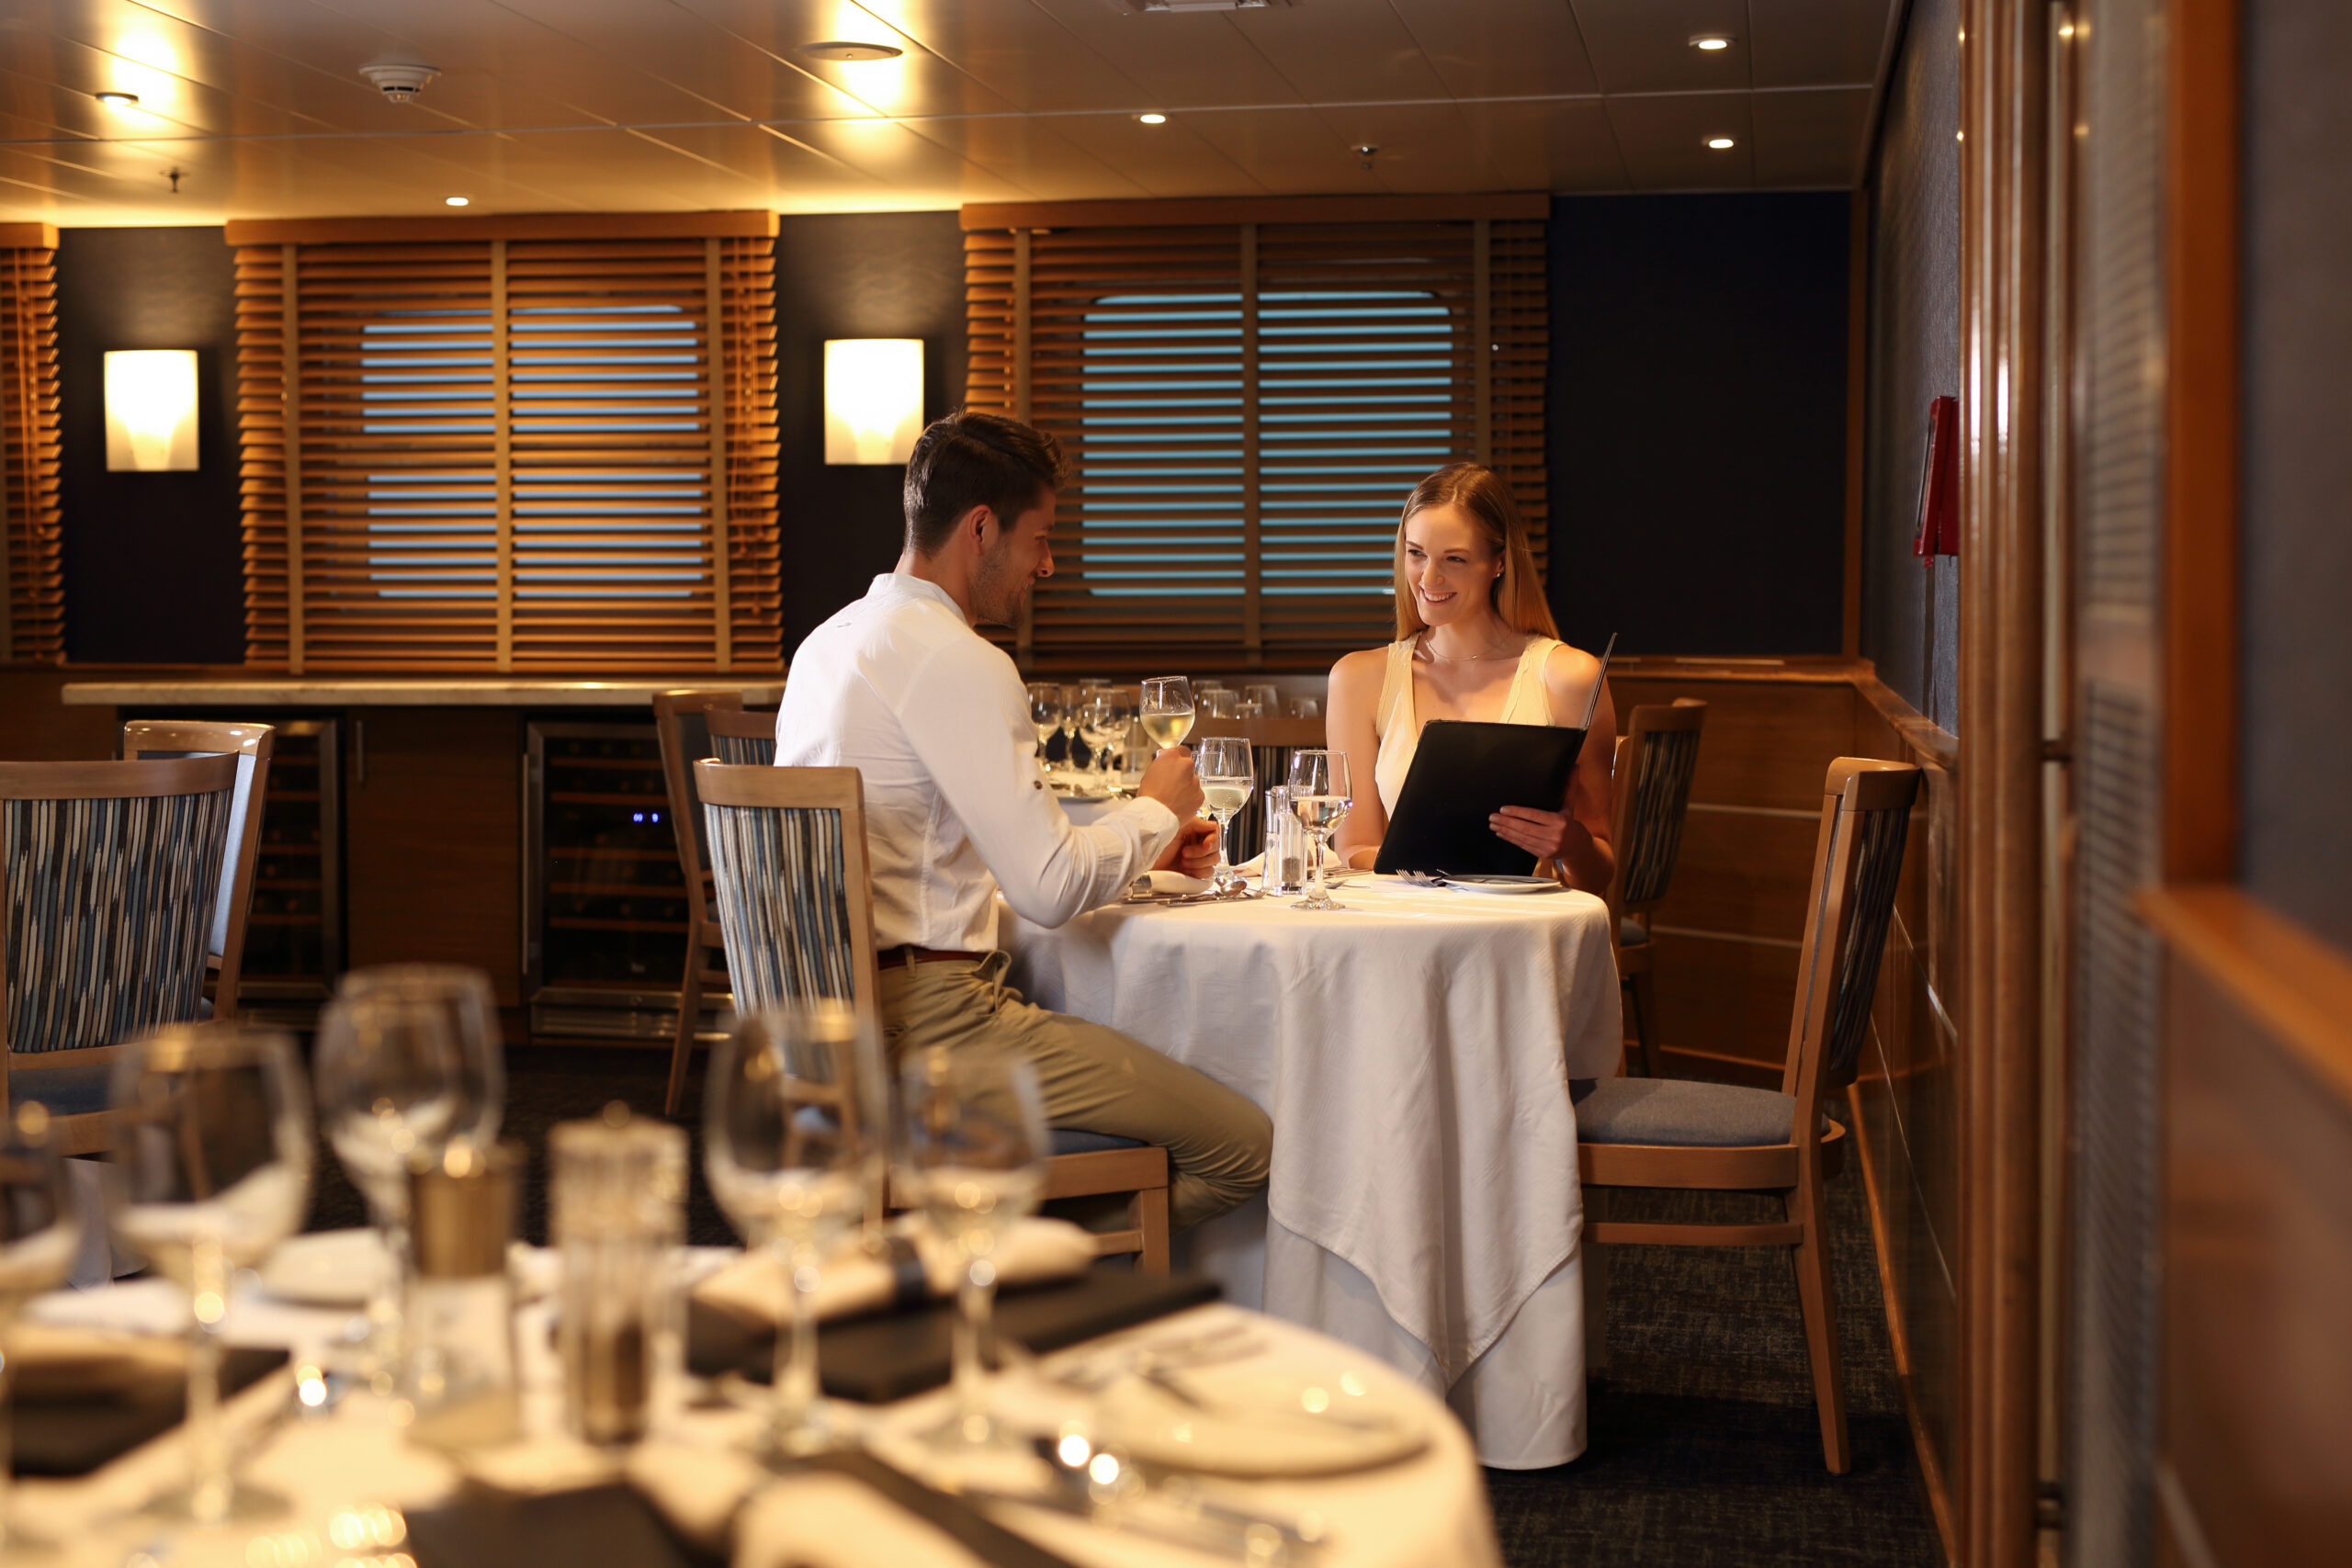 Couple enjoying the gastronomy of the cruise